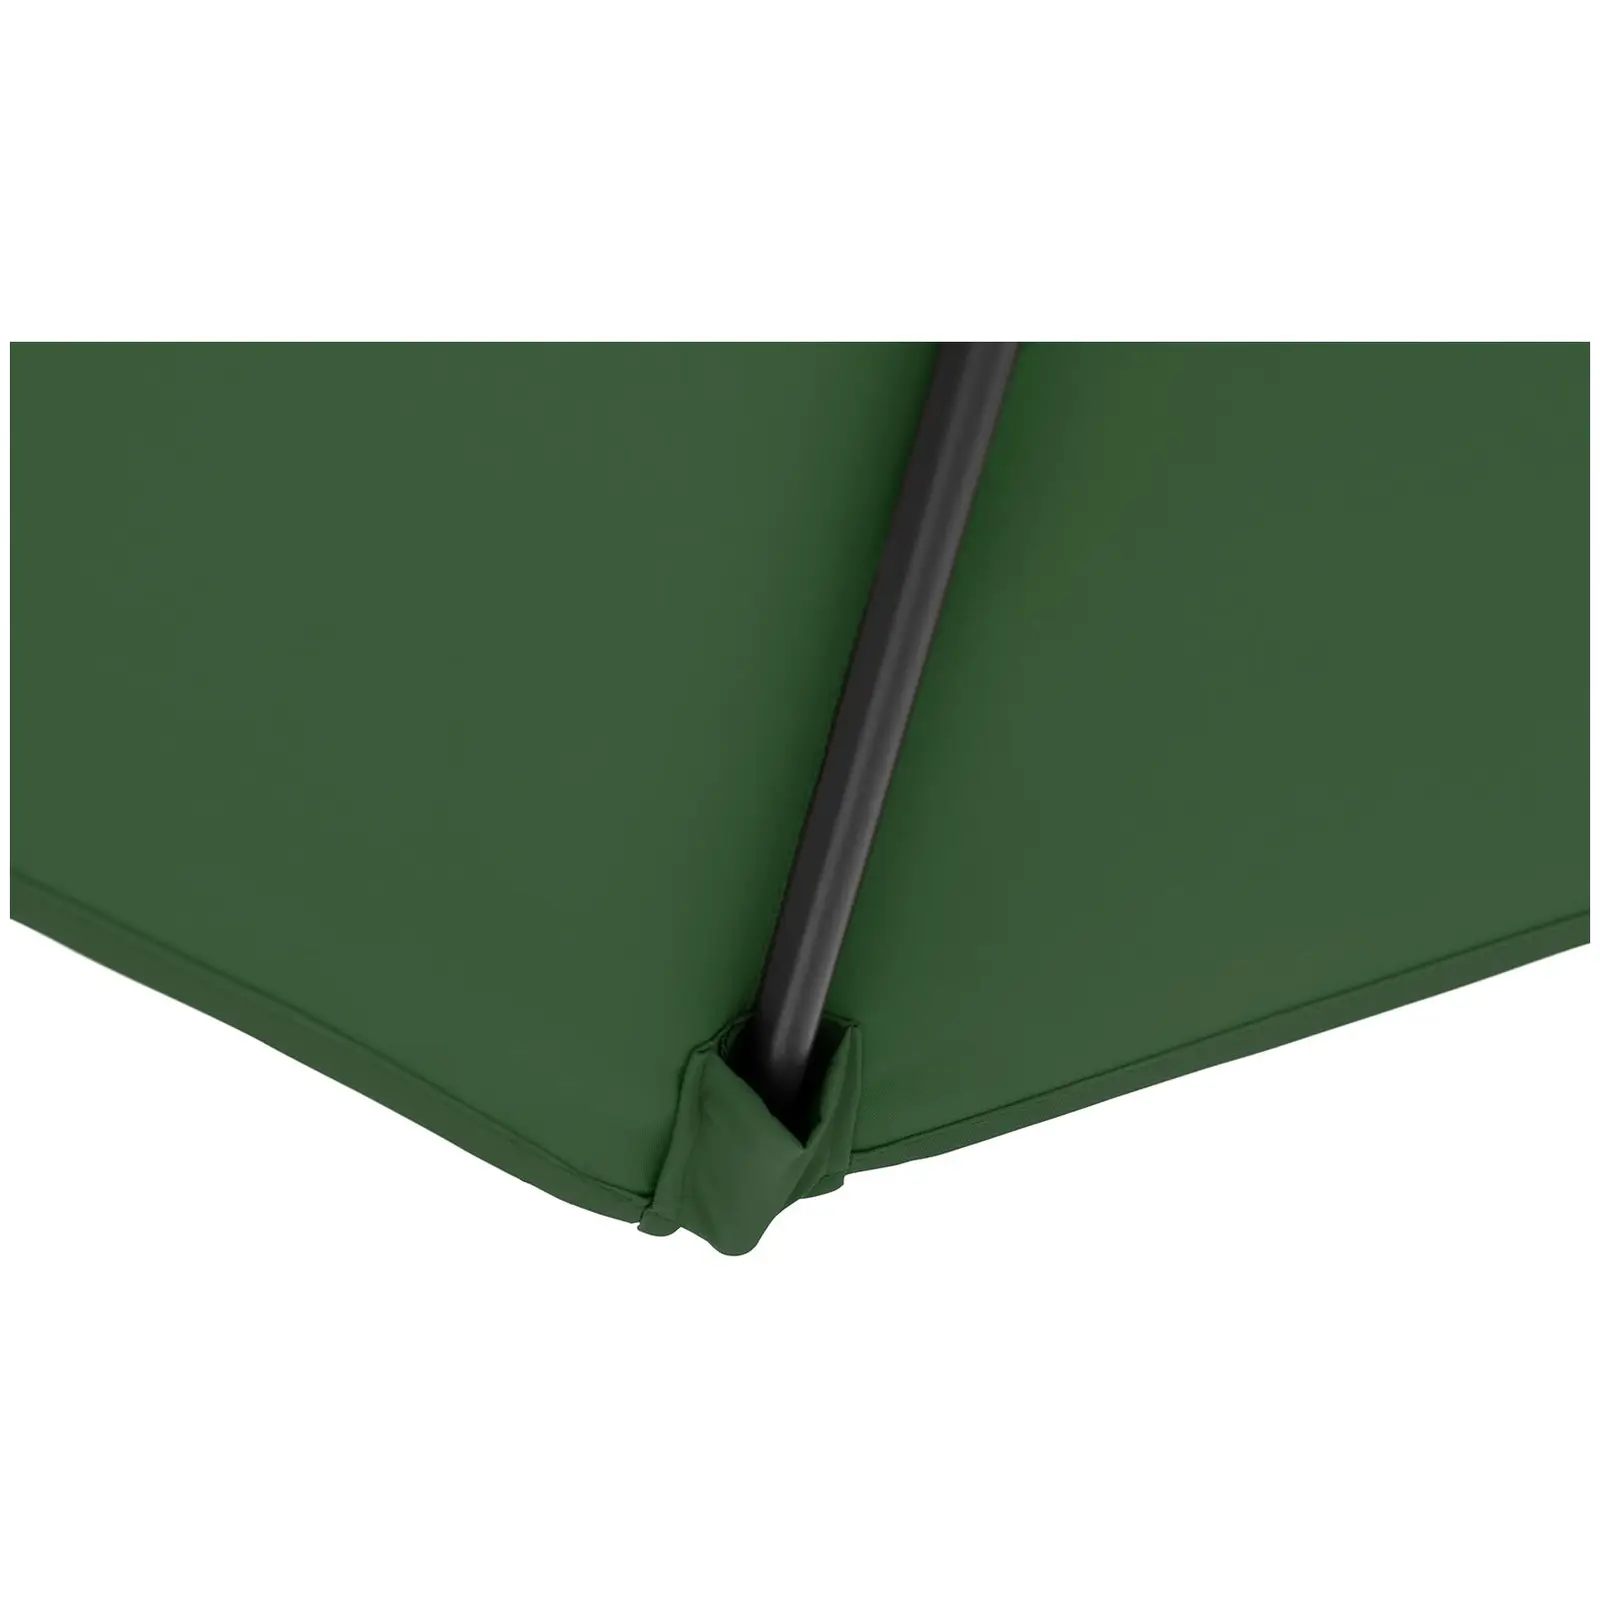 Brugt Parasol - grøn - sekskantet - 270 cm i diameter